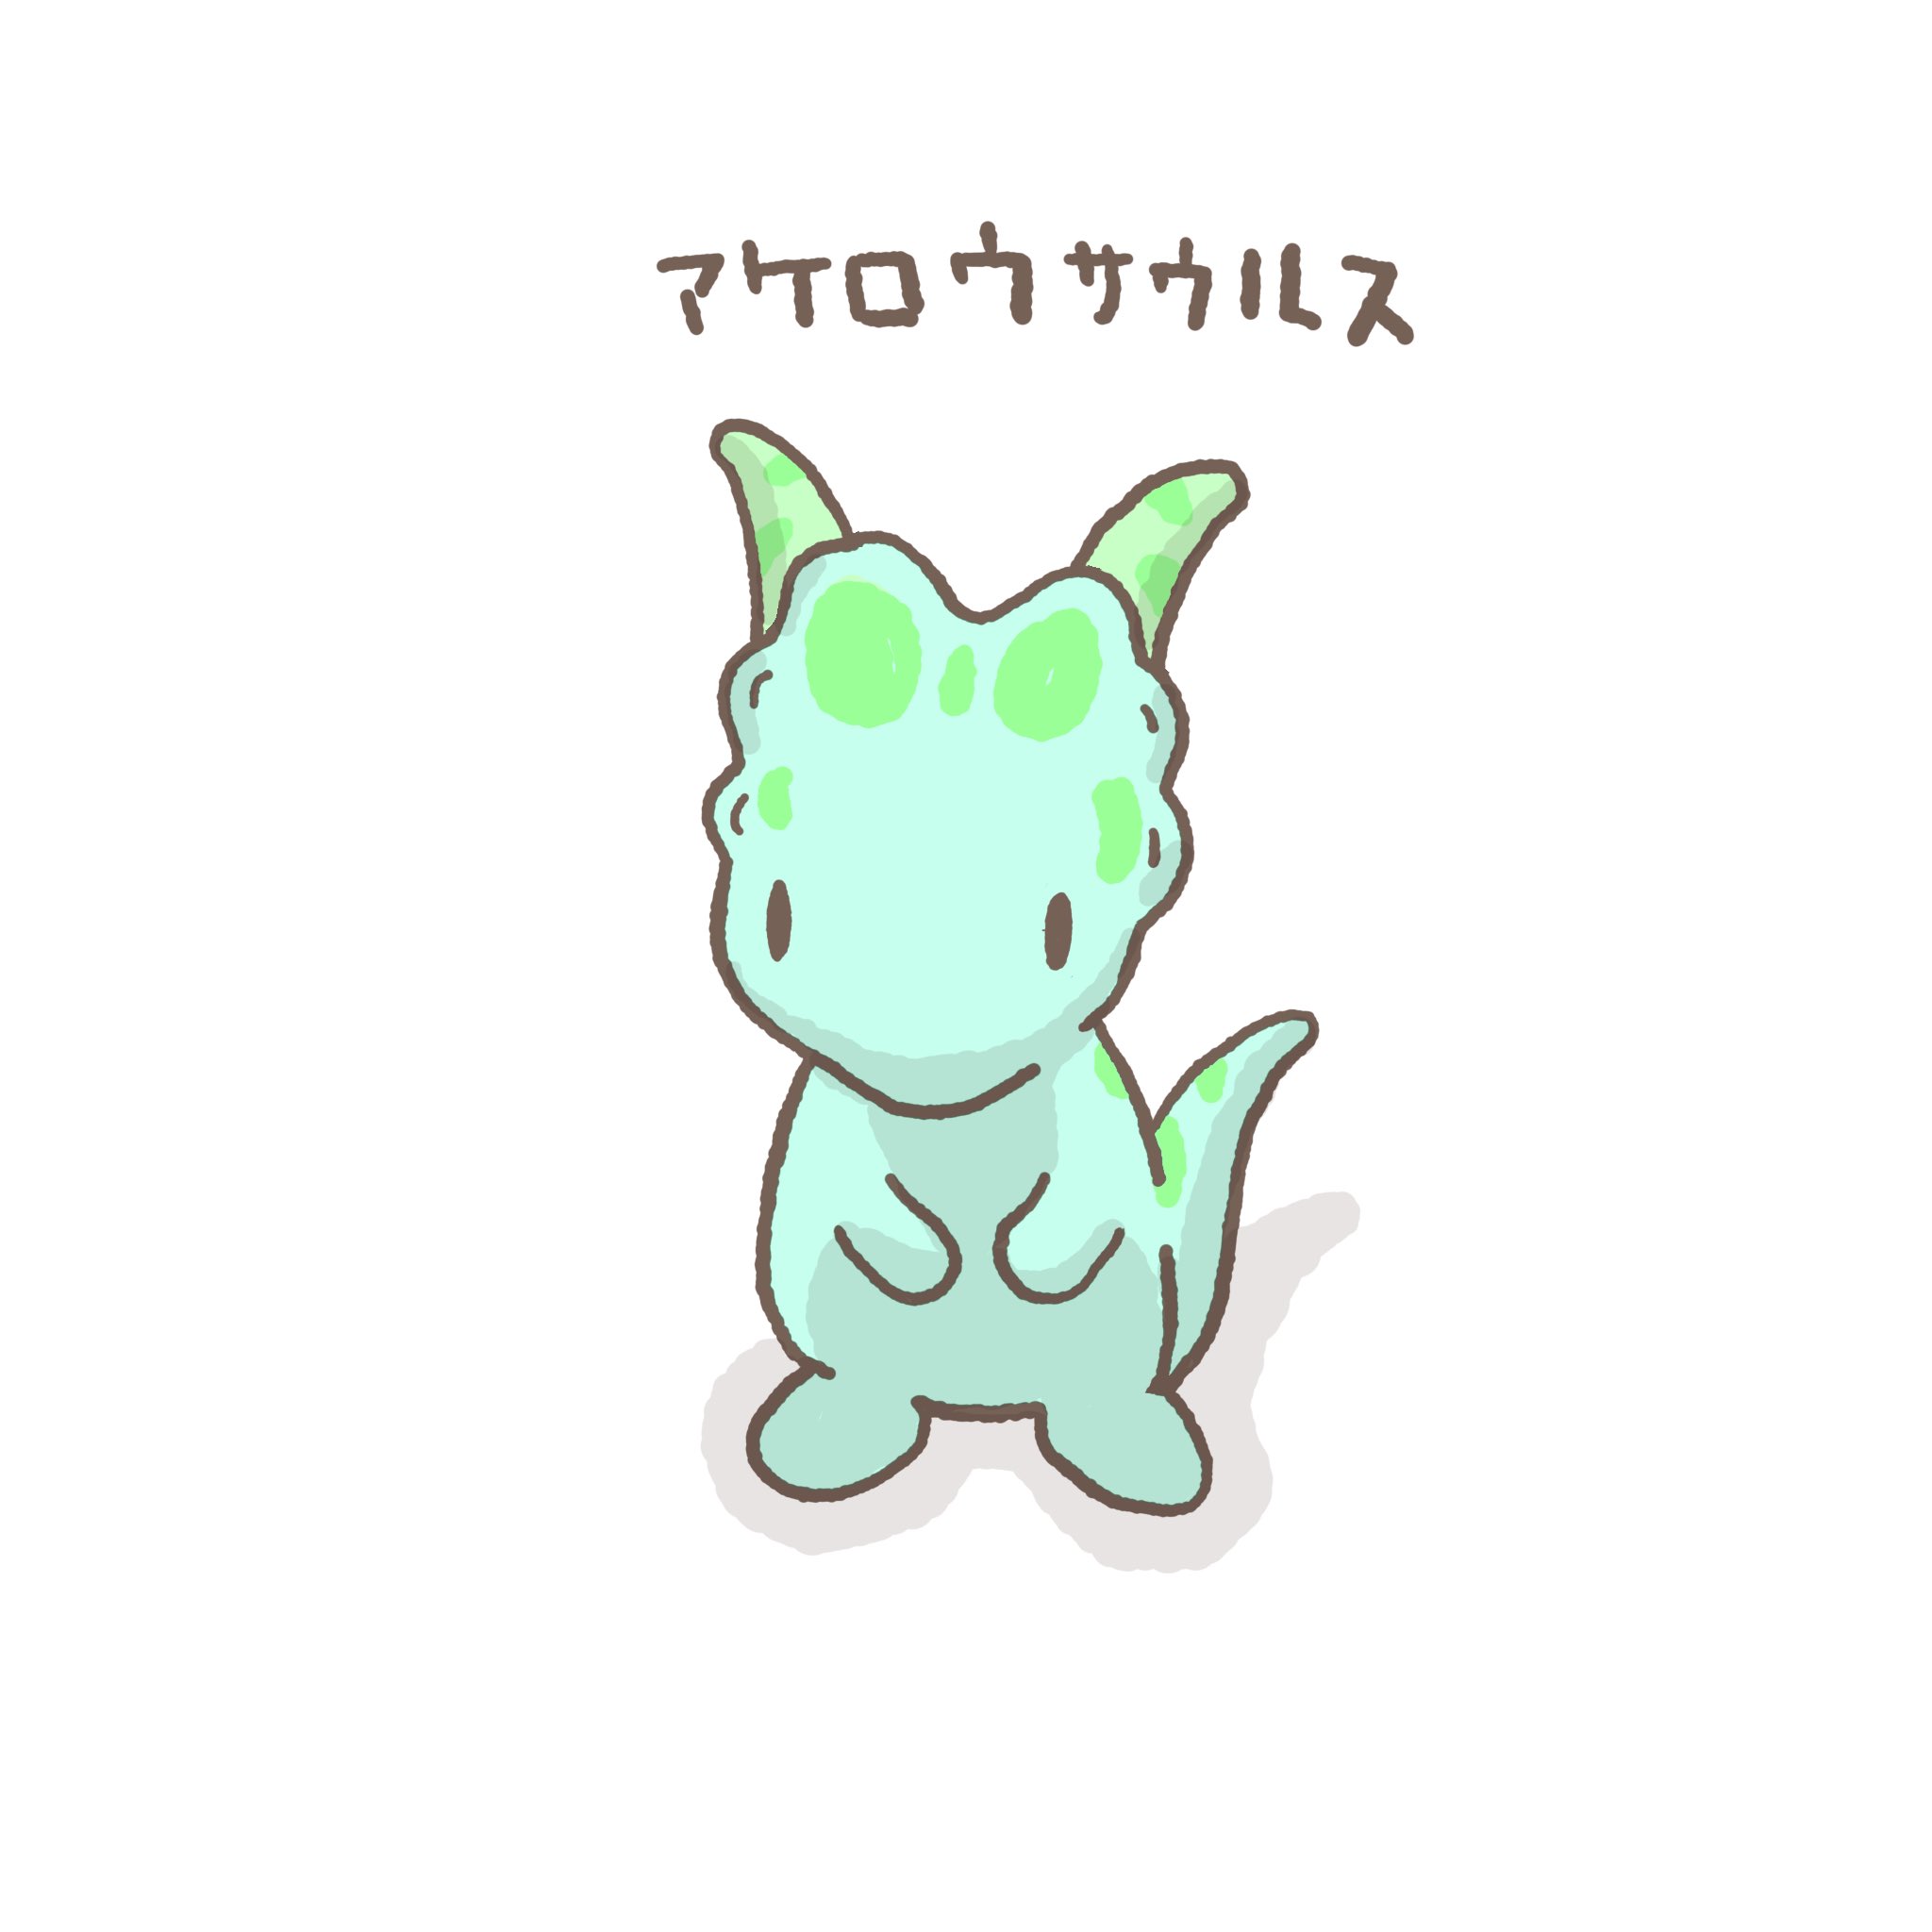 恐竜の恐くない生活 公式 Yasashiijuraki Twitter